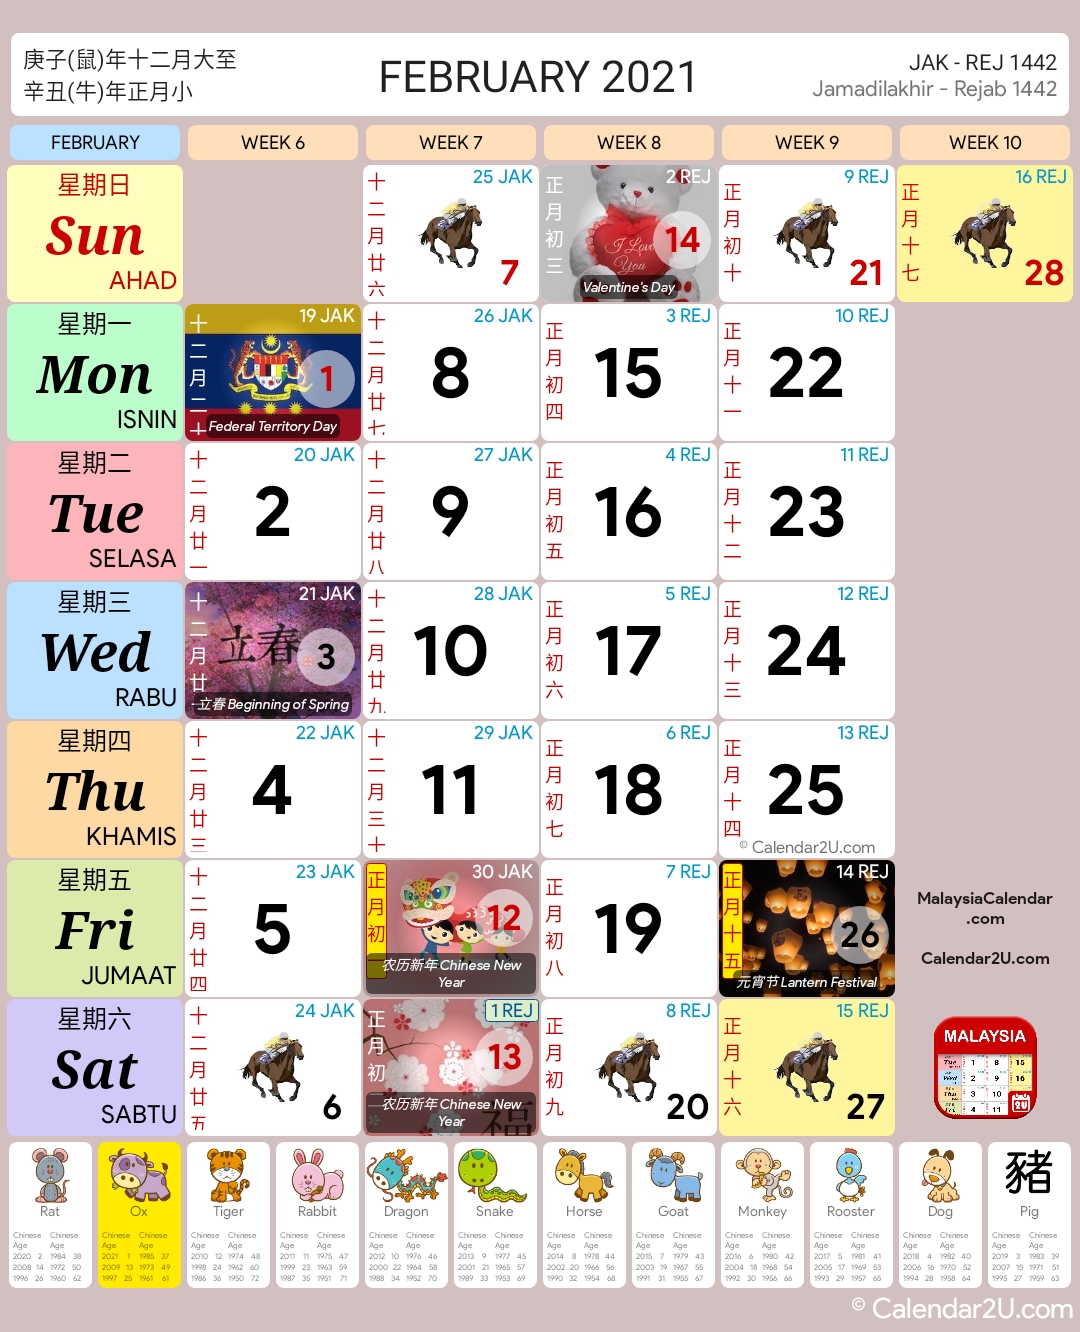 Kalender oktober 2021 malaysia